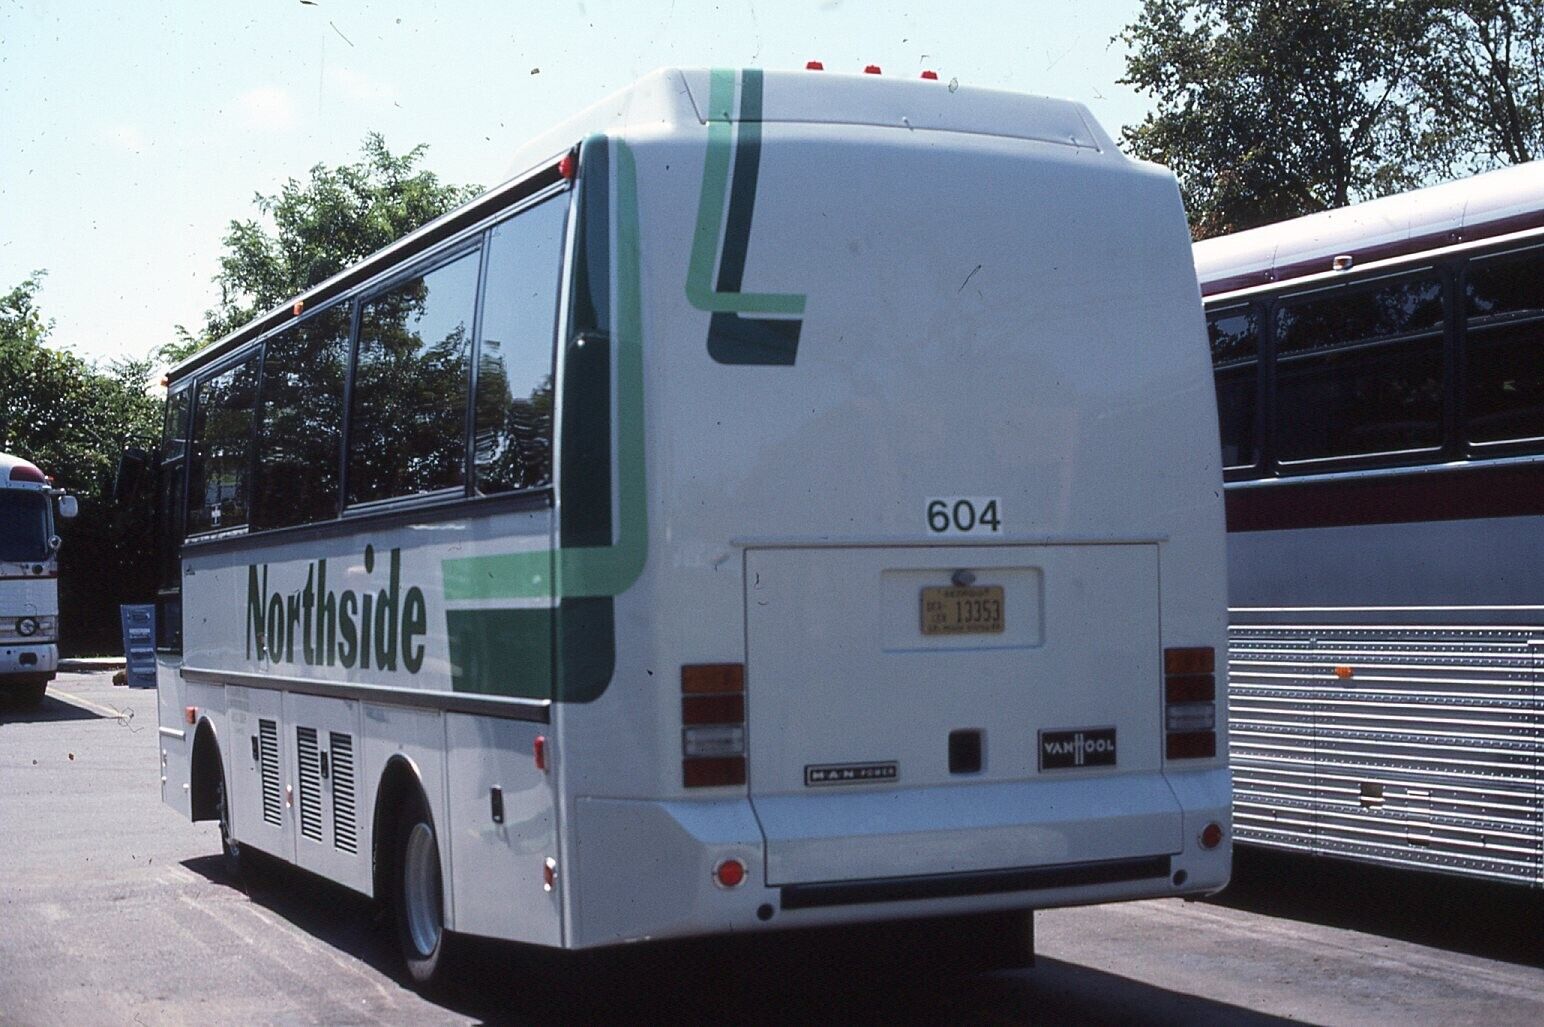 Original Bus Slide Northside #604 Van Hool Bus 1986 #15